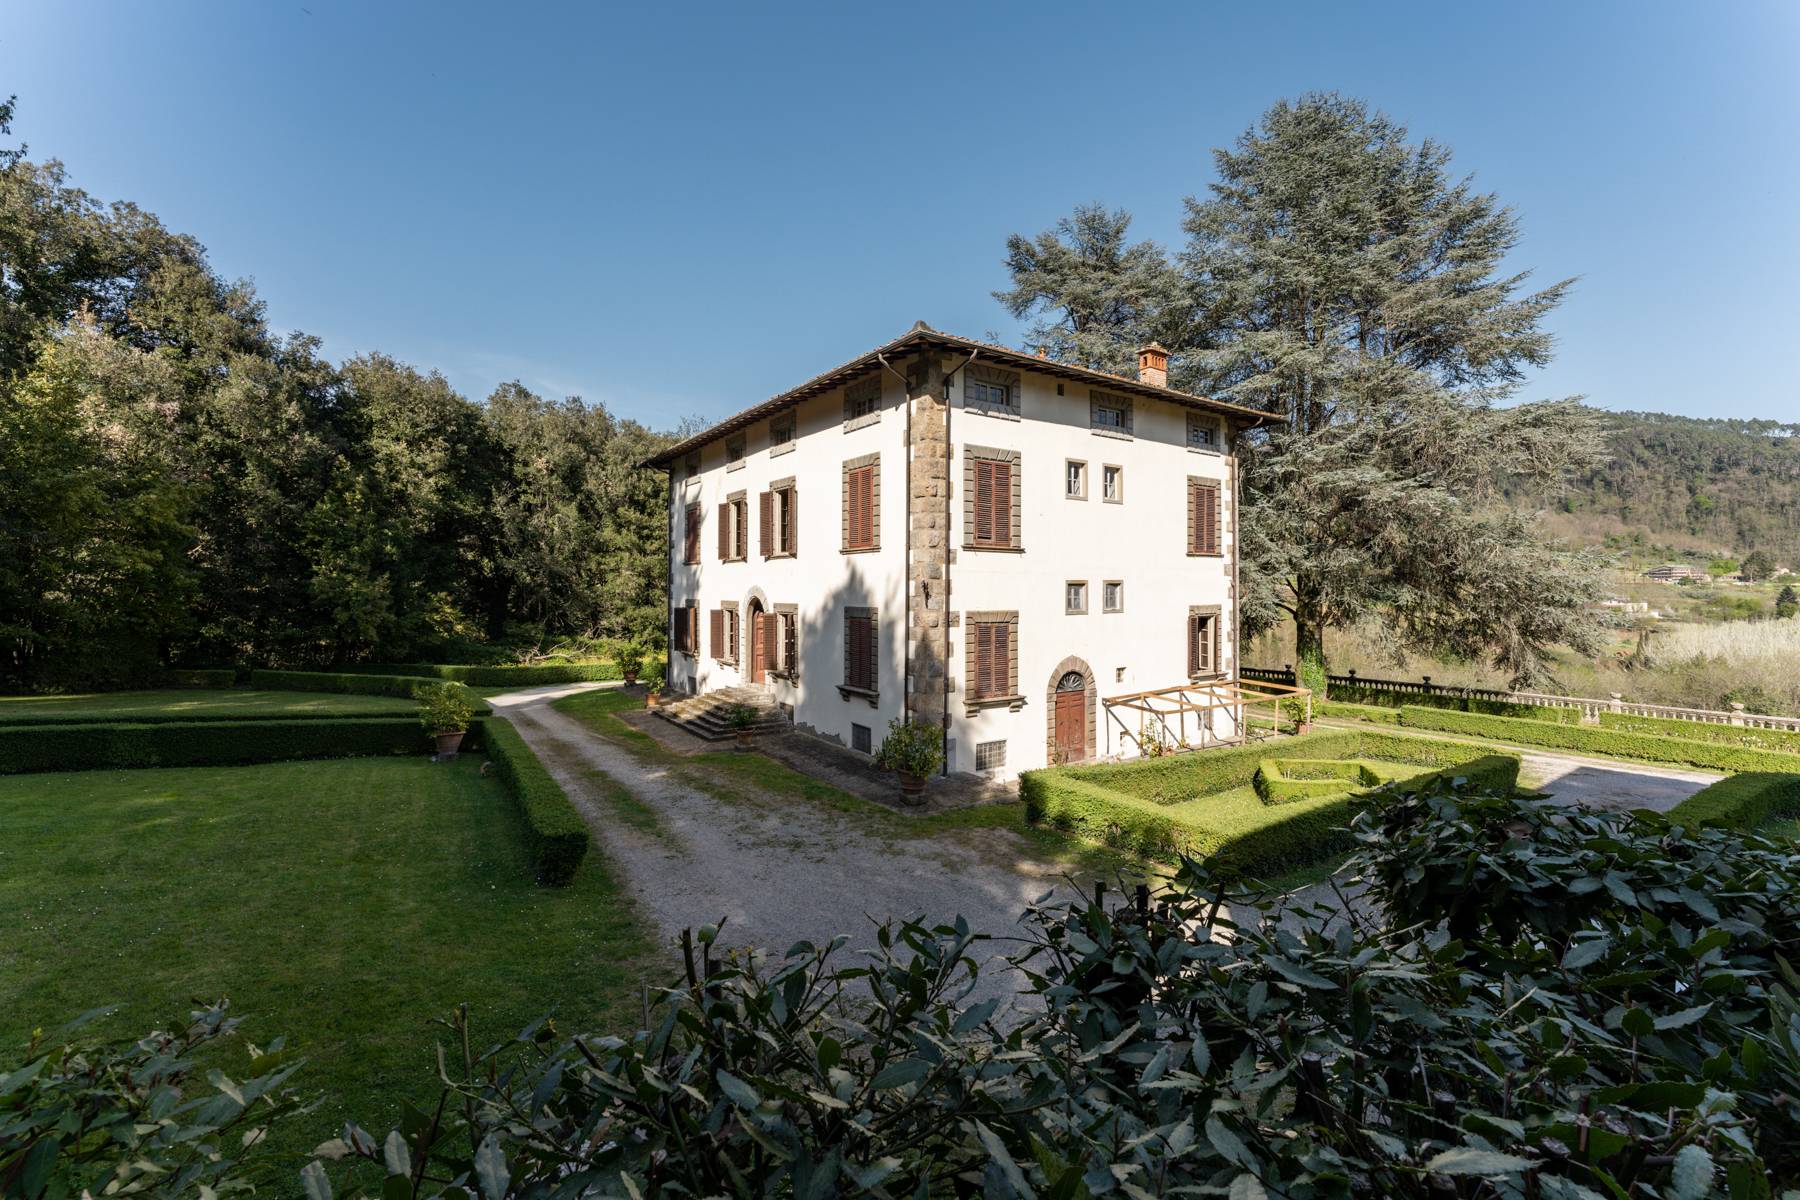 Villa in Vendita a Pescaglia: 5 locali, 2100 mq - Foto 25